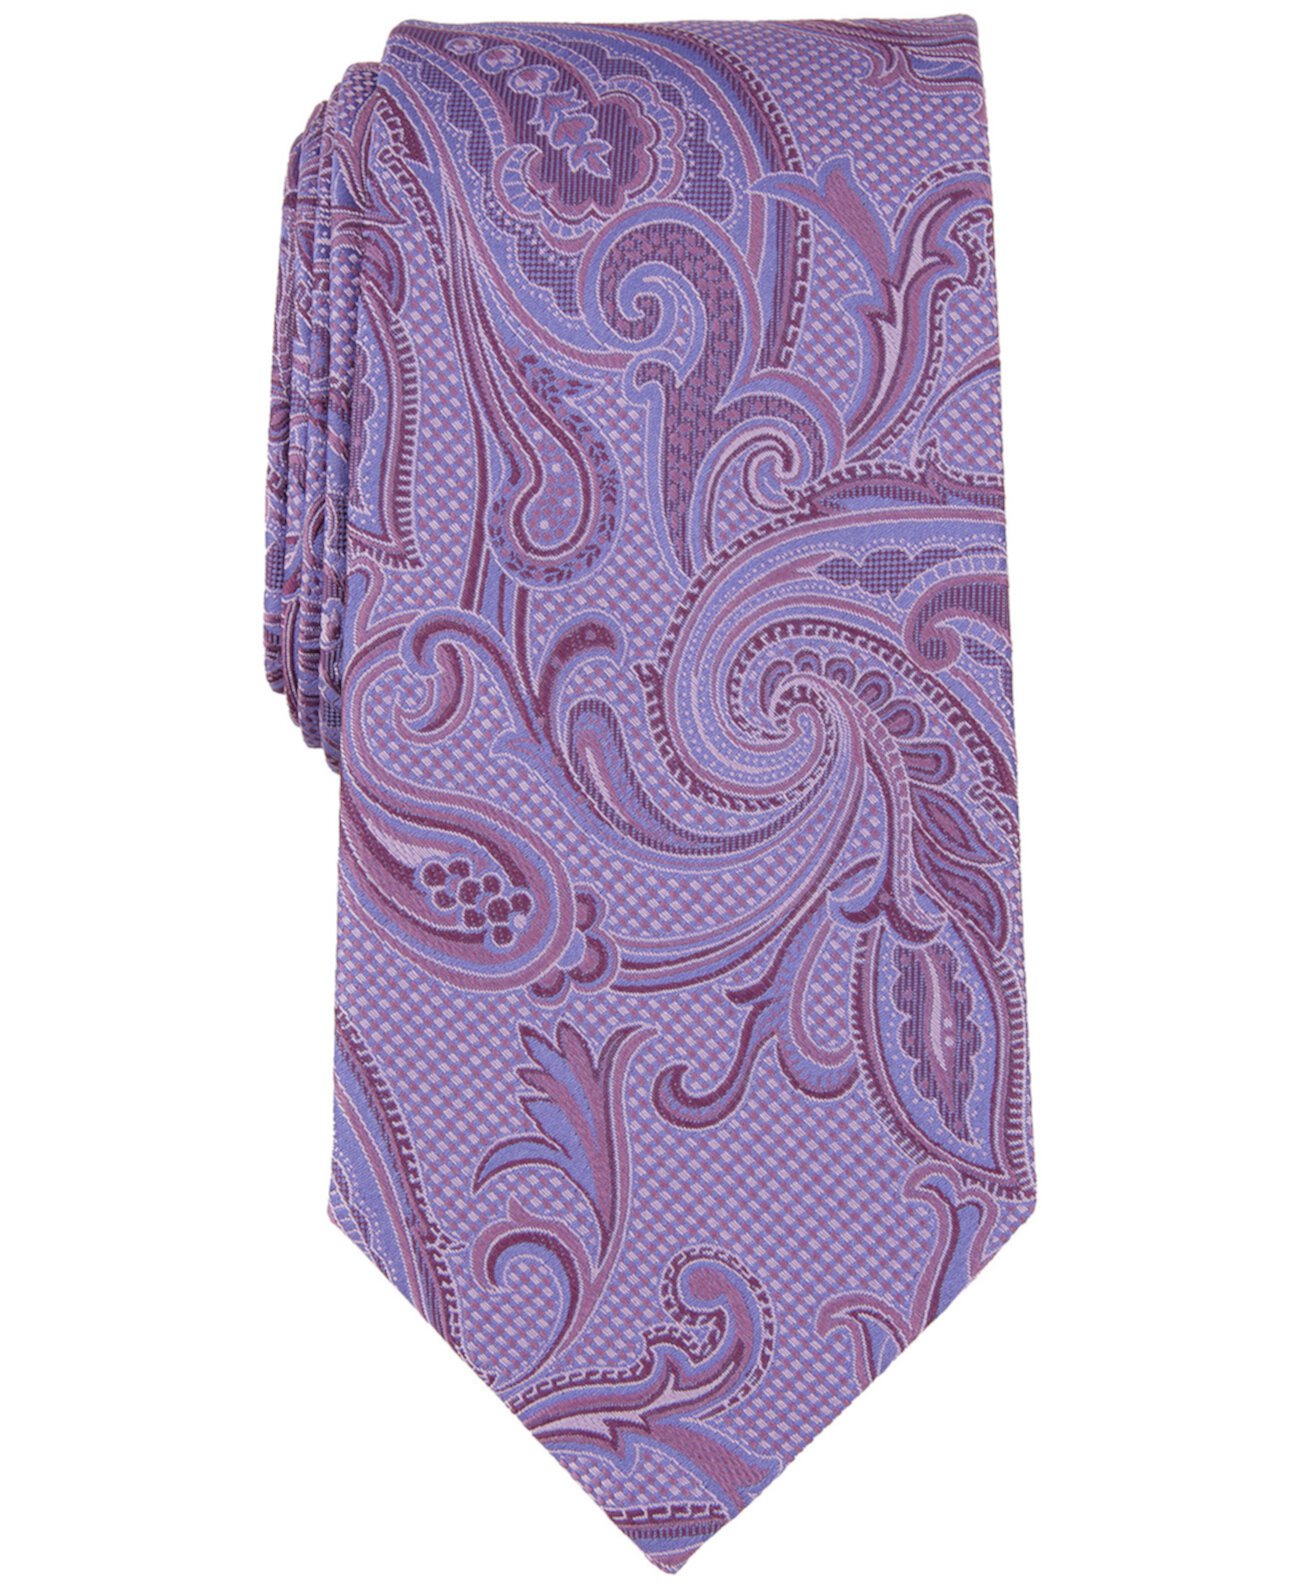 Мужской галстук Marbella с пейсли Michael Kors